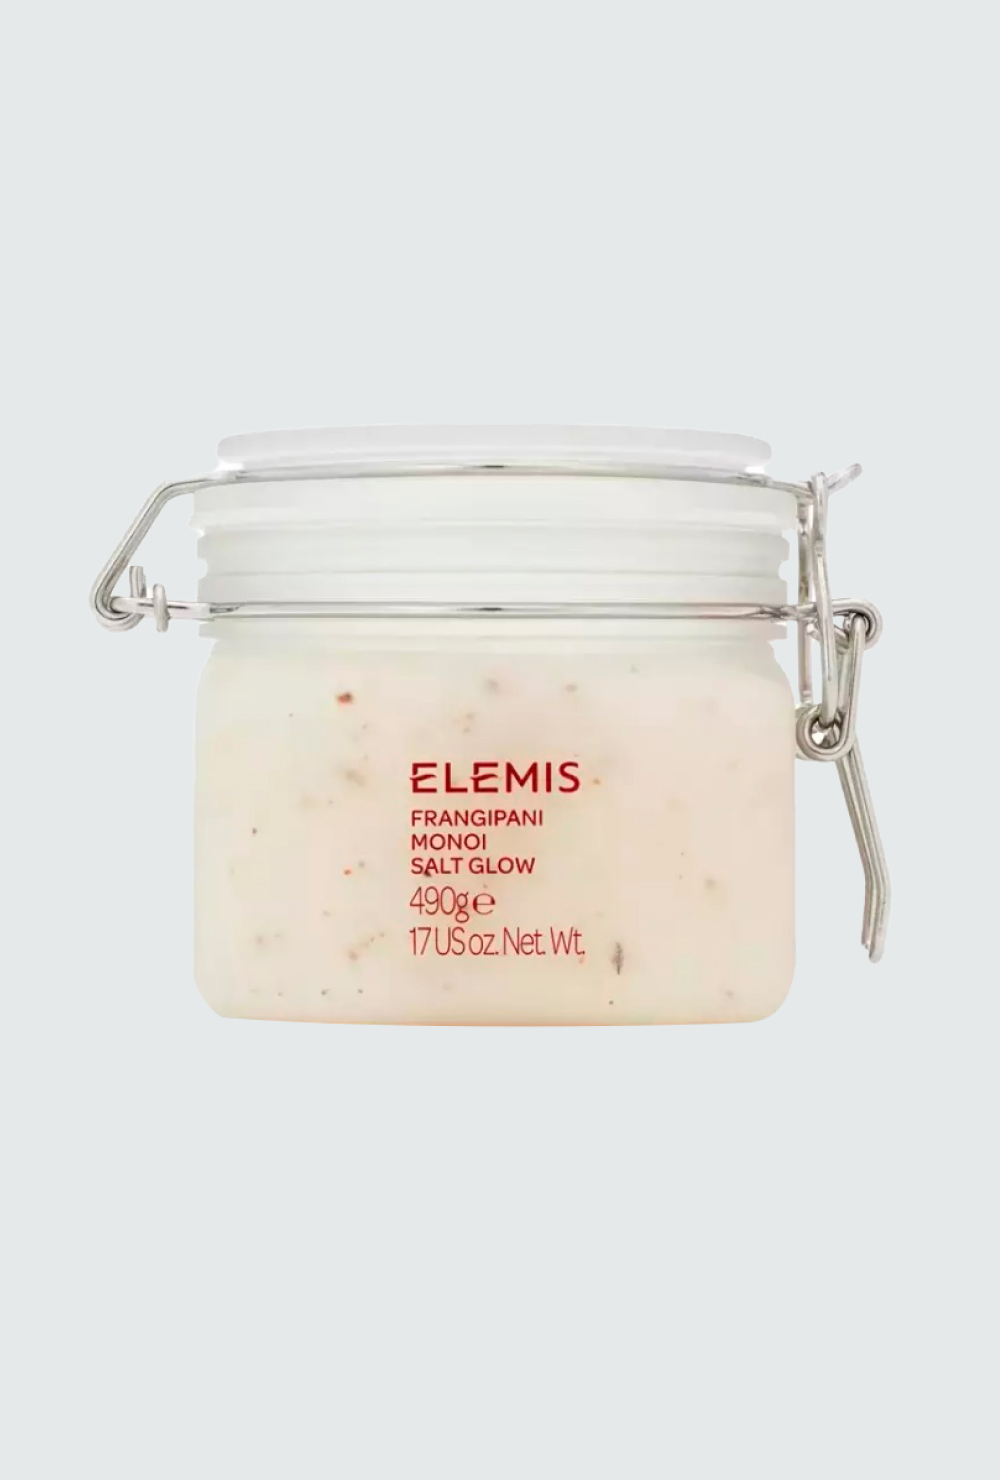 Что и почему покупать у Elemis: крем, скраб, масло и многое другое для безупречной кожи (фото 2)